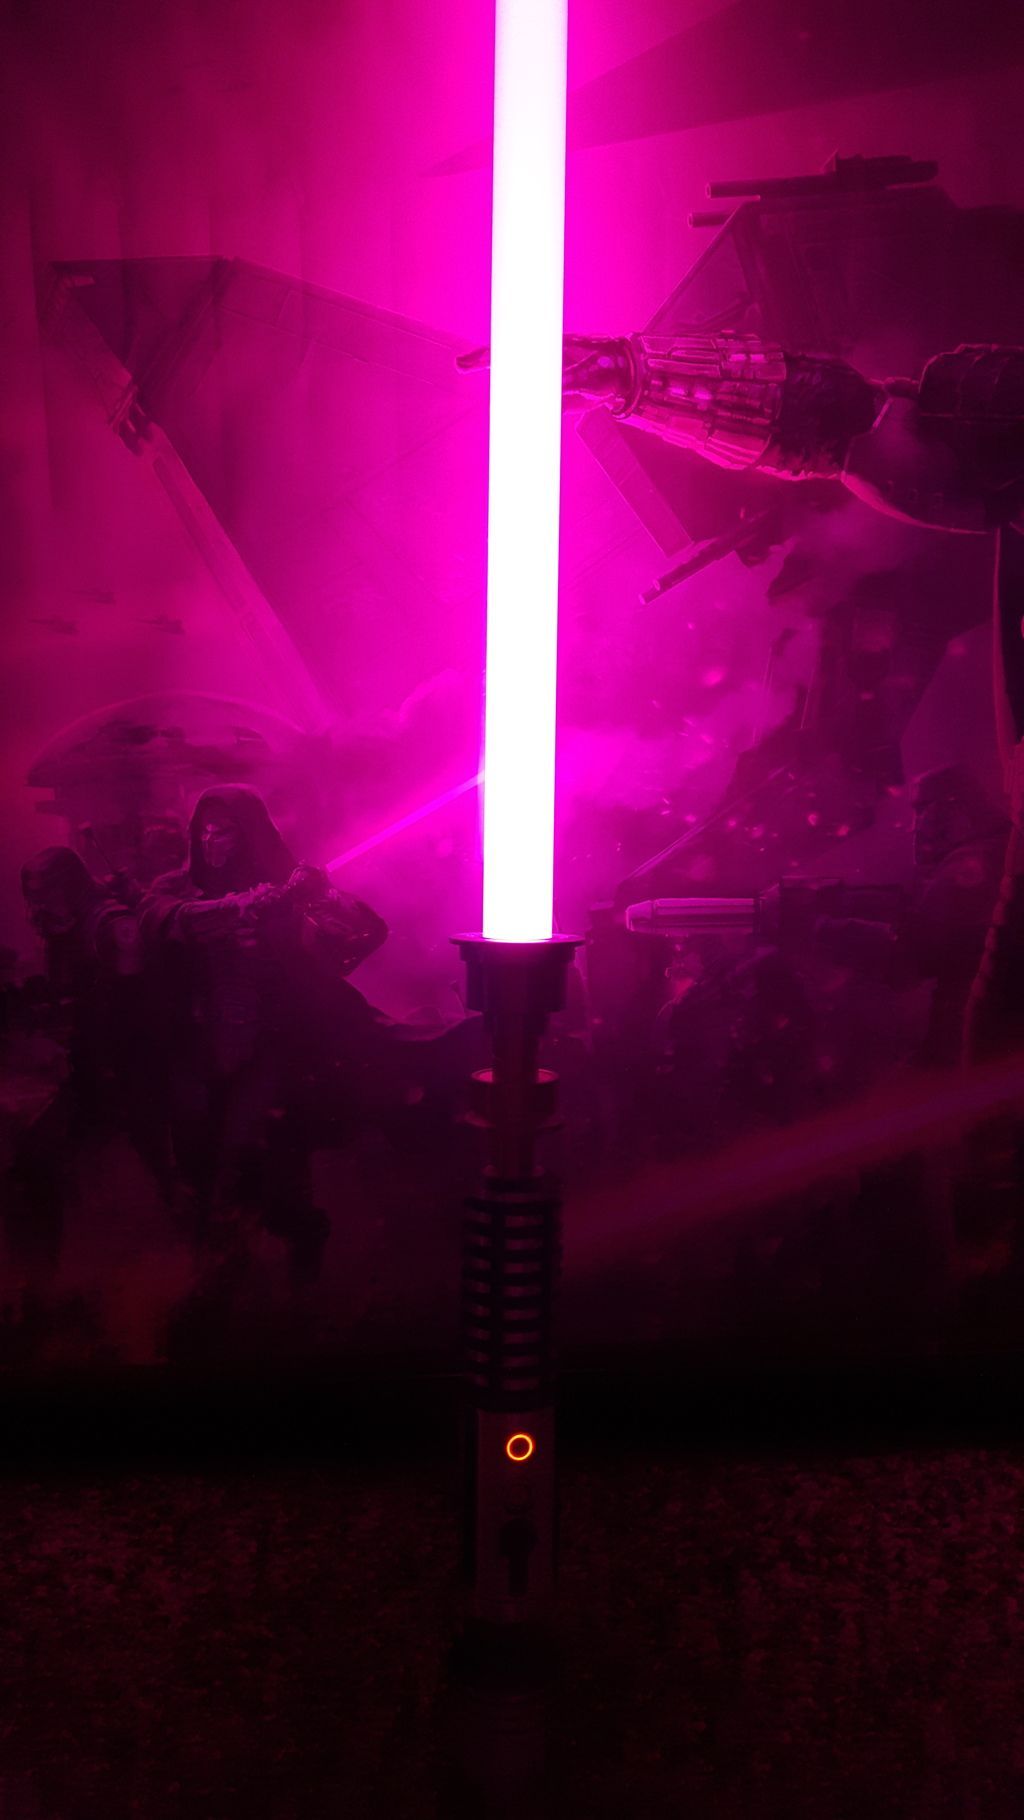 Hot Pink Lightsaber. Star wars picture, Star wars light saber, Star wars wallpaper